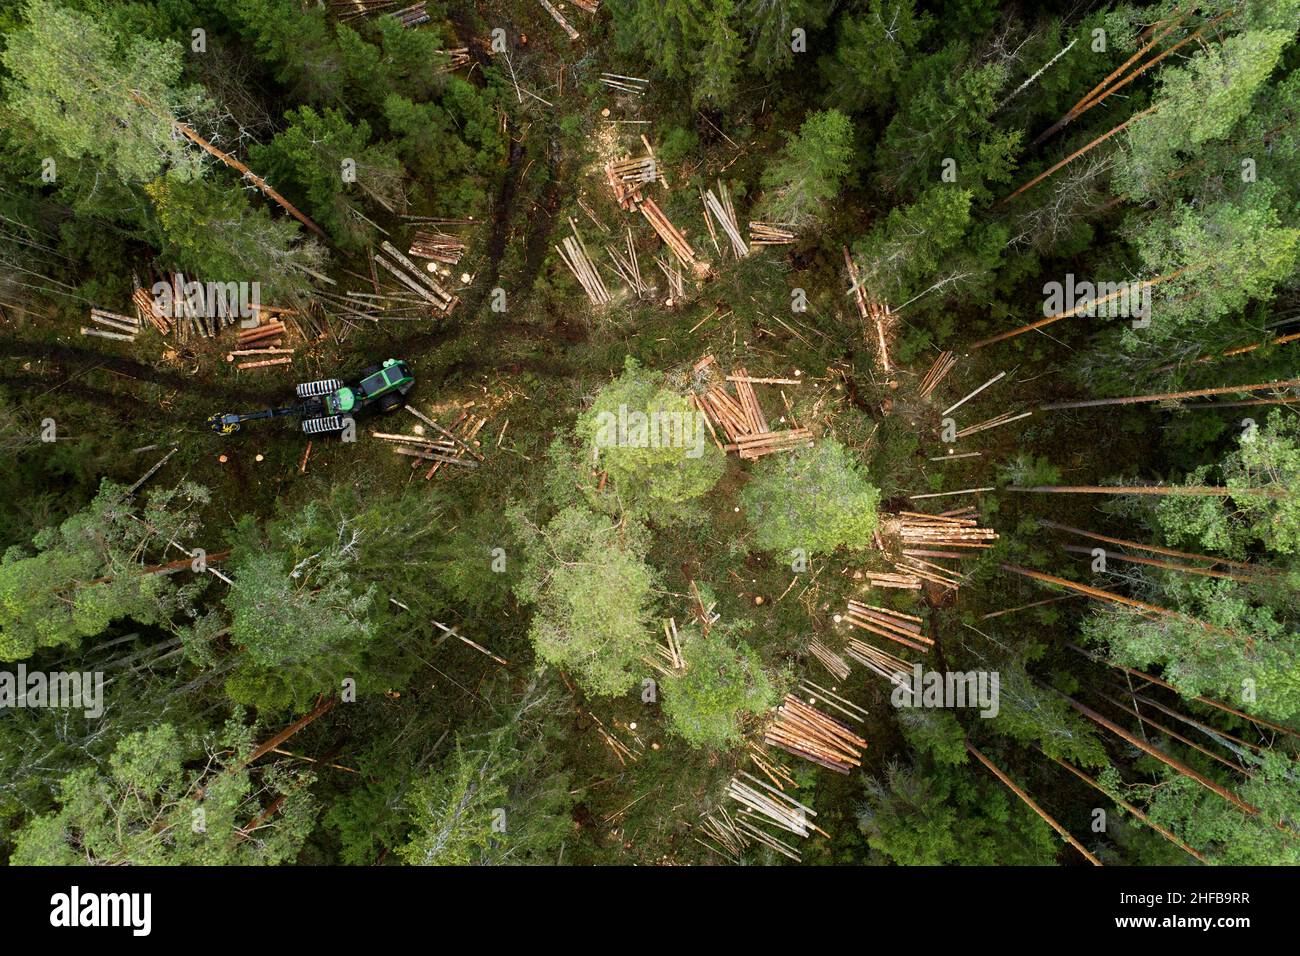 Une grande moissonneuse de bois vert se déplaçant au milieu de la forêt de conifères estonienne. Banque D'Images